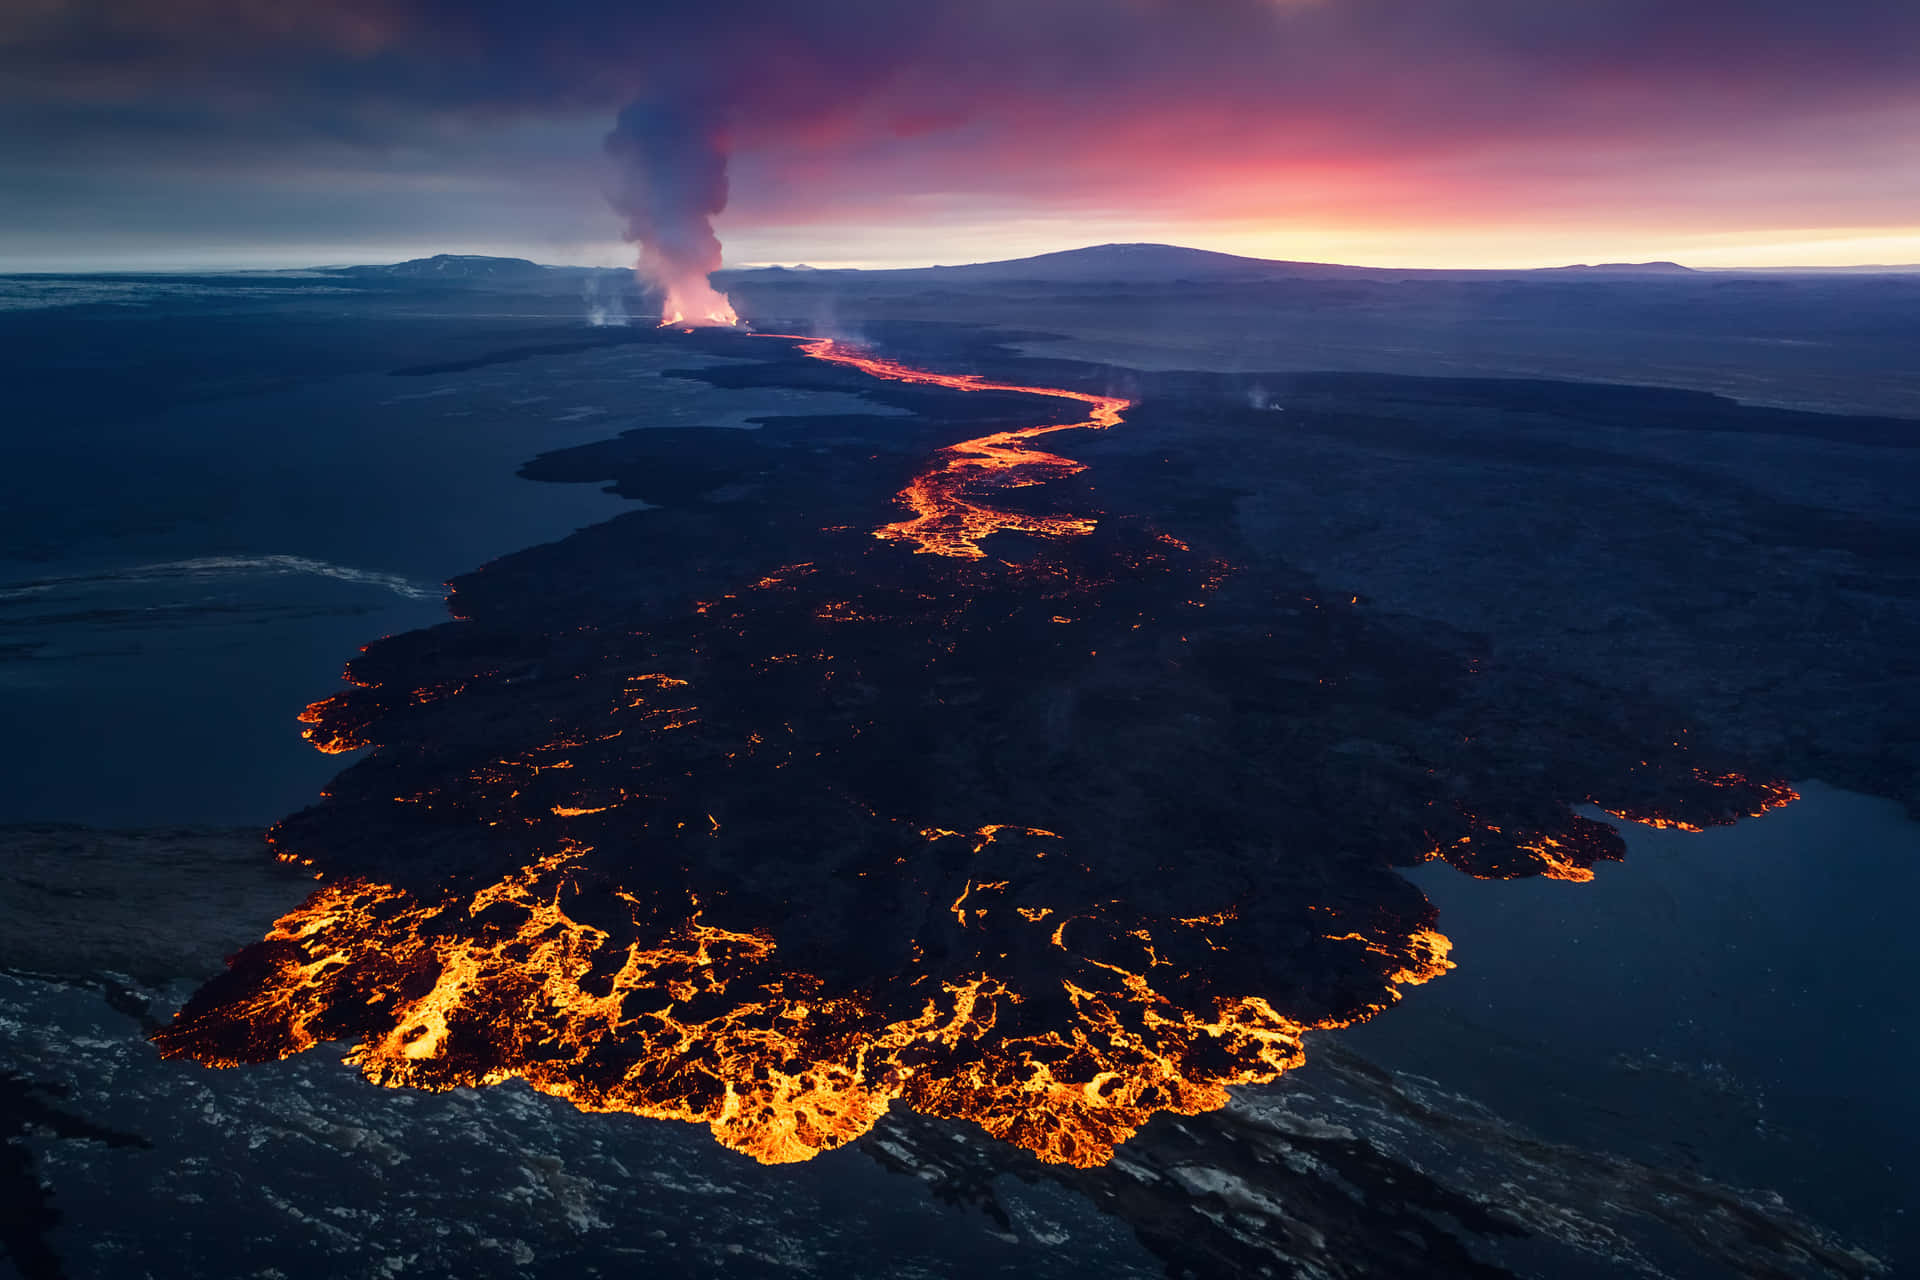 Opoder Imprevisível Da Natureza - Uma Bela Vista De Um Vulcão Em Erupção.